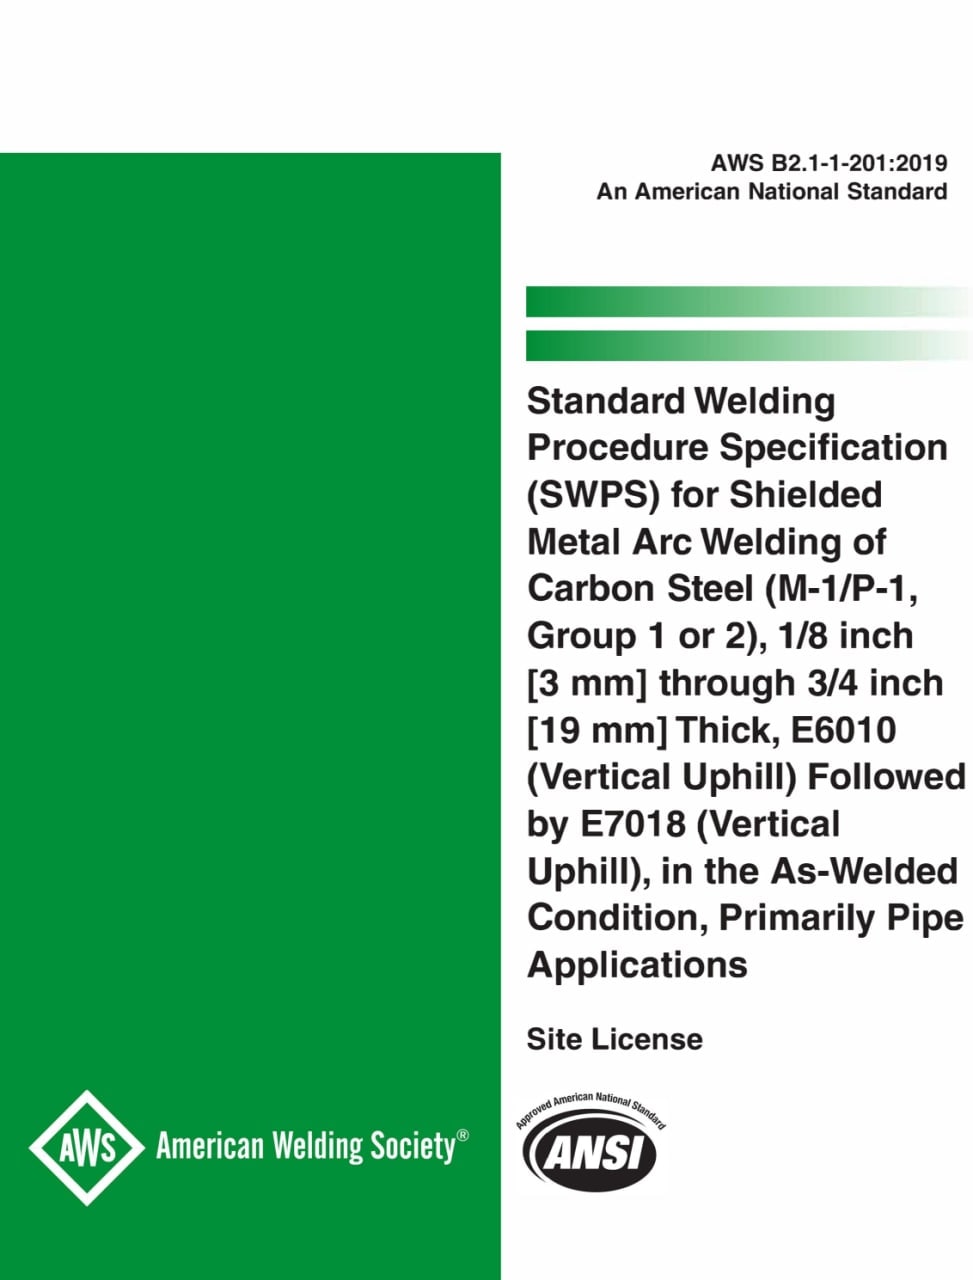 دستورالعمل های استاندارد SWPS برای متریال فولادکربنی P1 به روش SMAW از ضخامت 3 الی 19 میلیمتر  ➰با الکترود 6010 و سپس 7018  💥☄️AWS B2.1-1-201